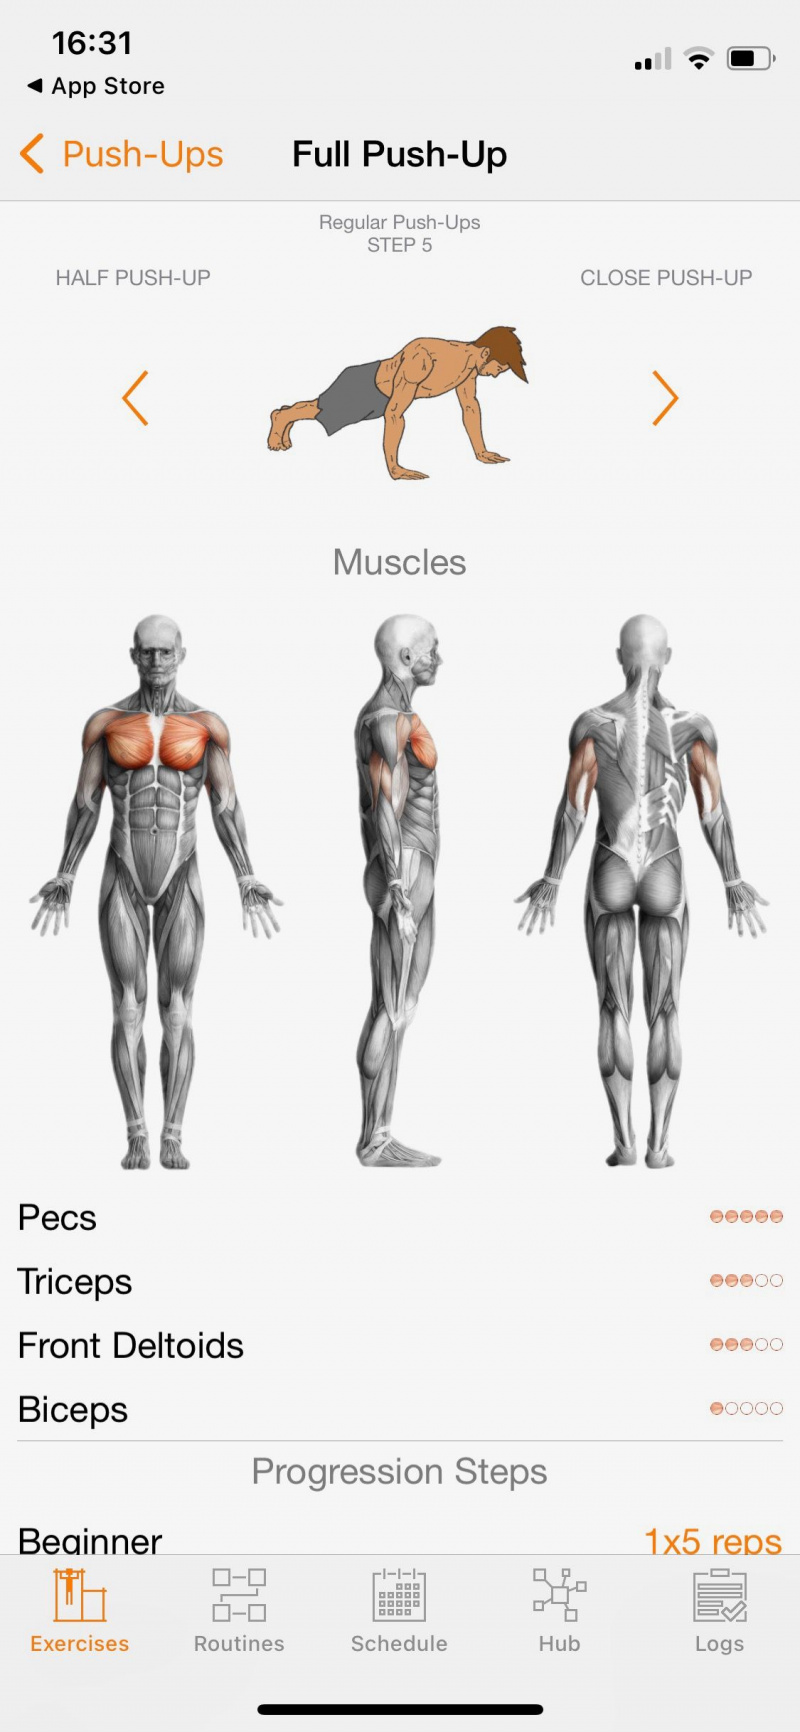   Zrzut ekranu z Calisthenics Mastery pokazujący pracę mięśni